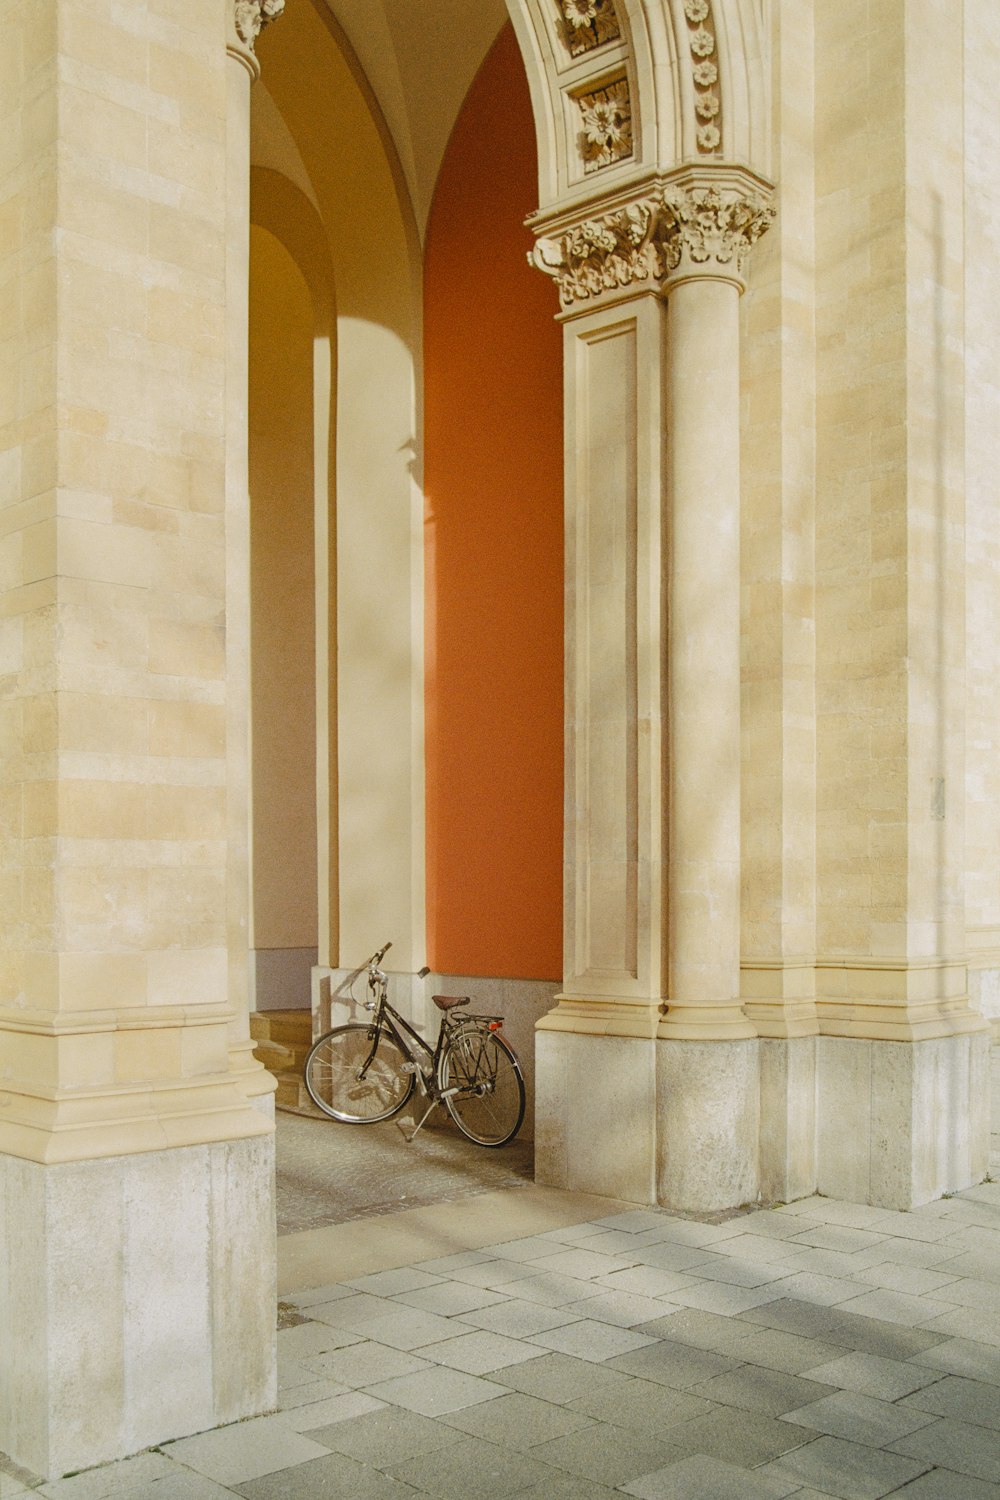 Ein Fahrrad ist in einem Torbogen eines Gebäudes geparkt